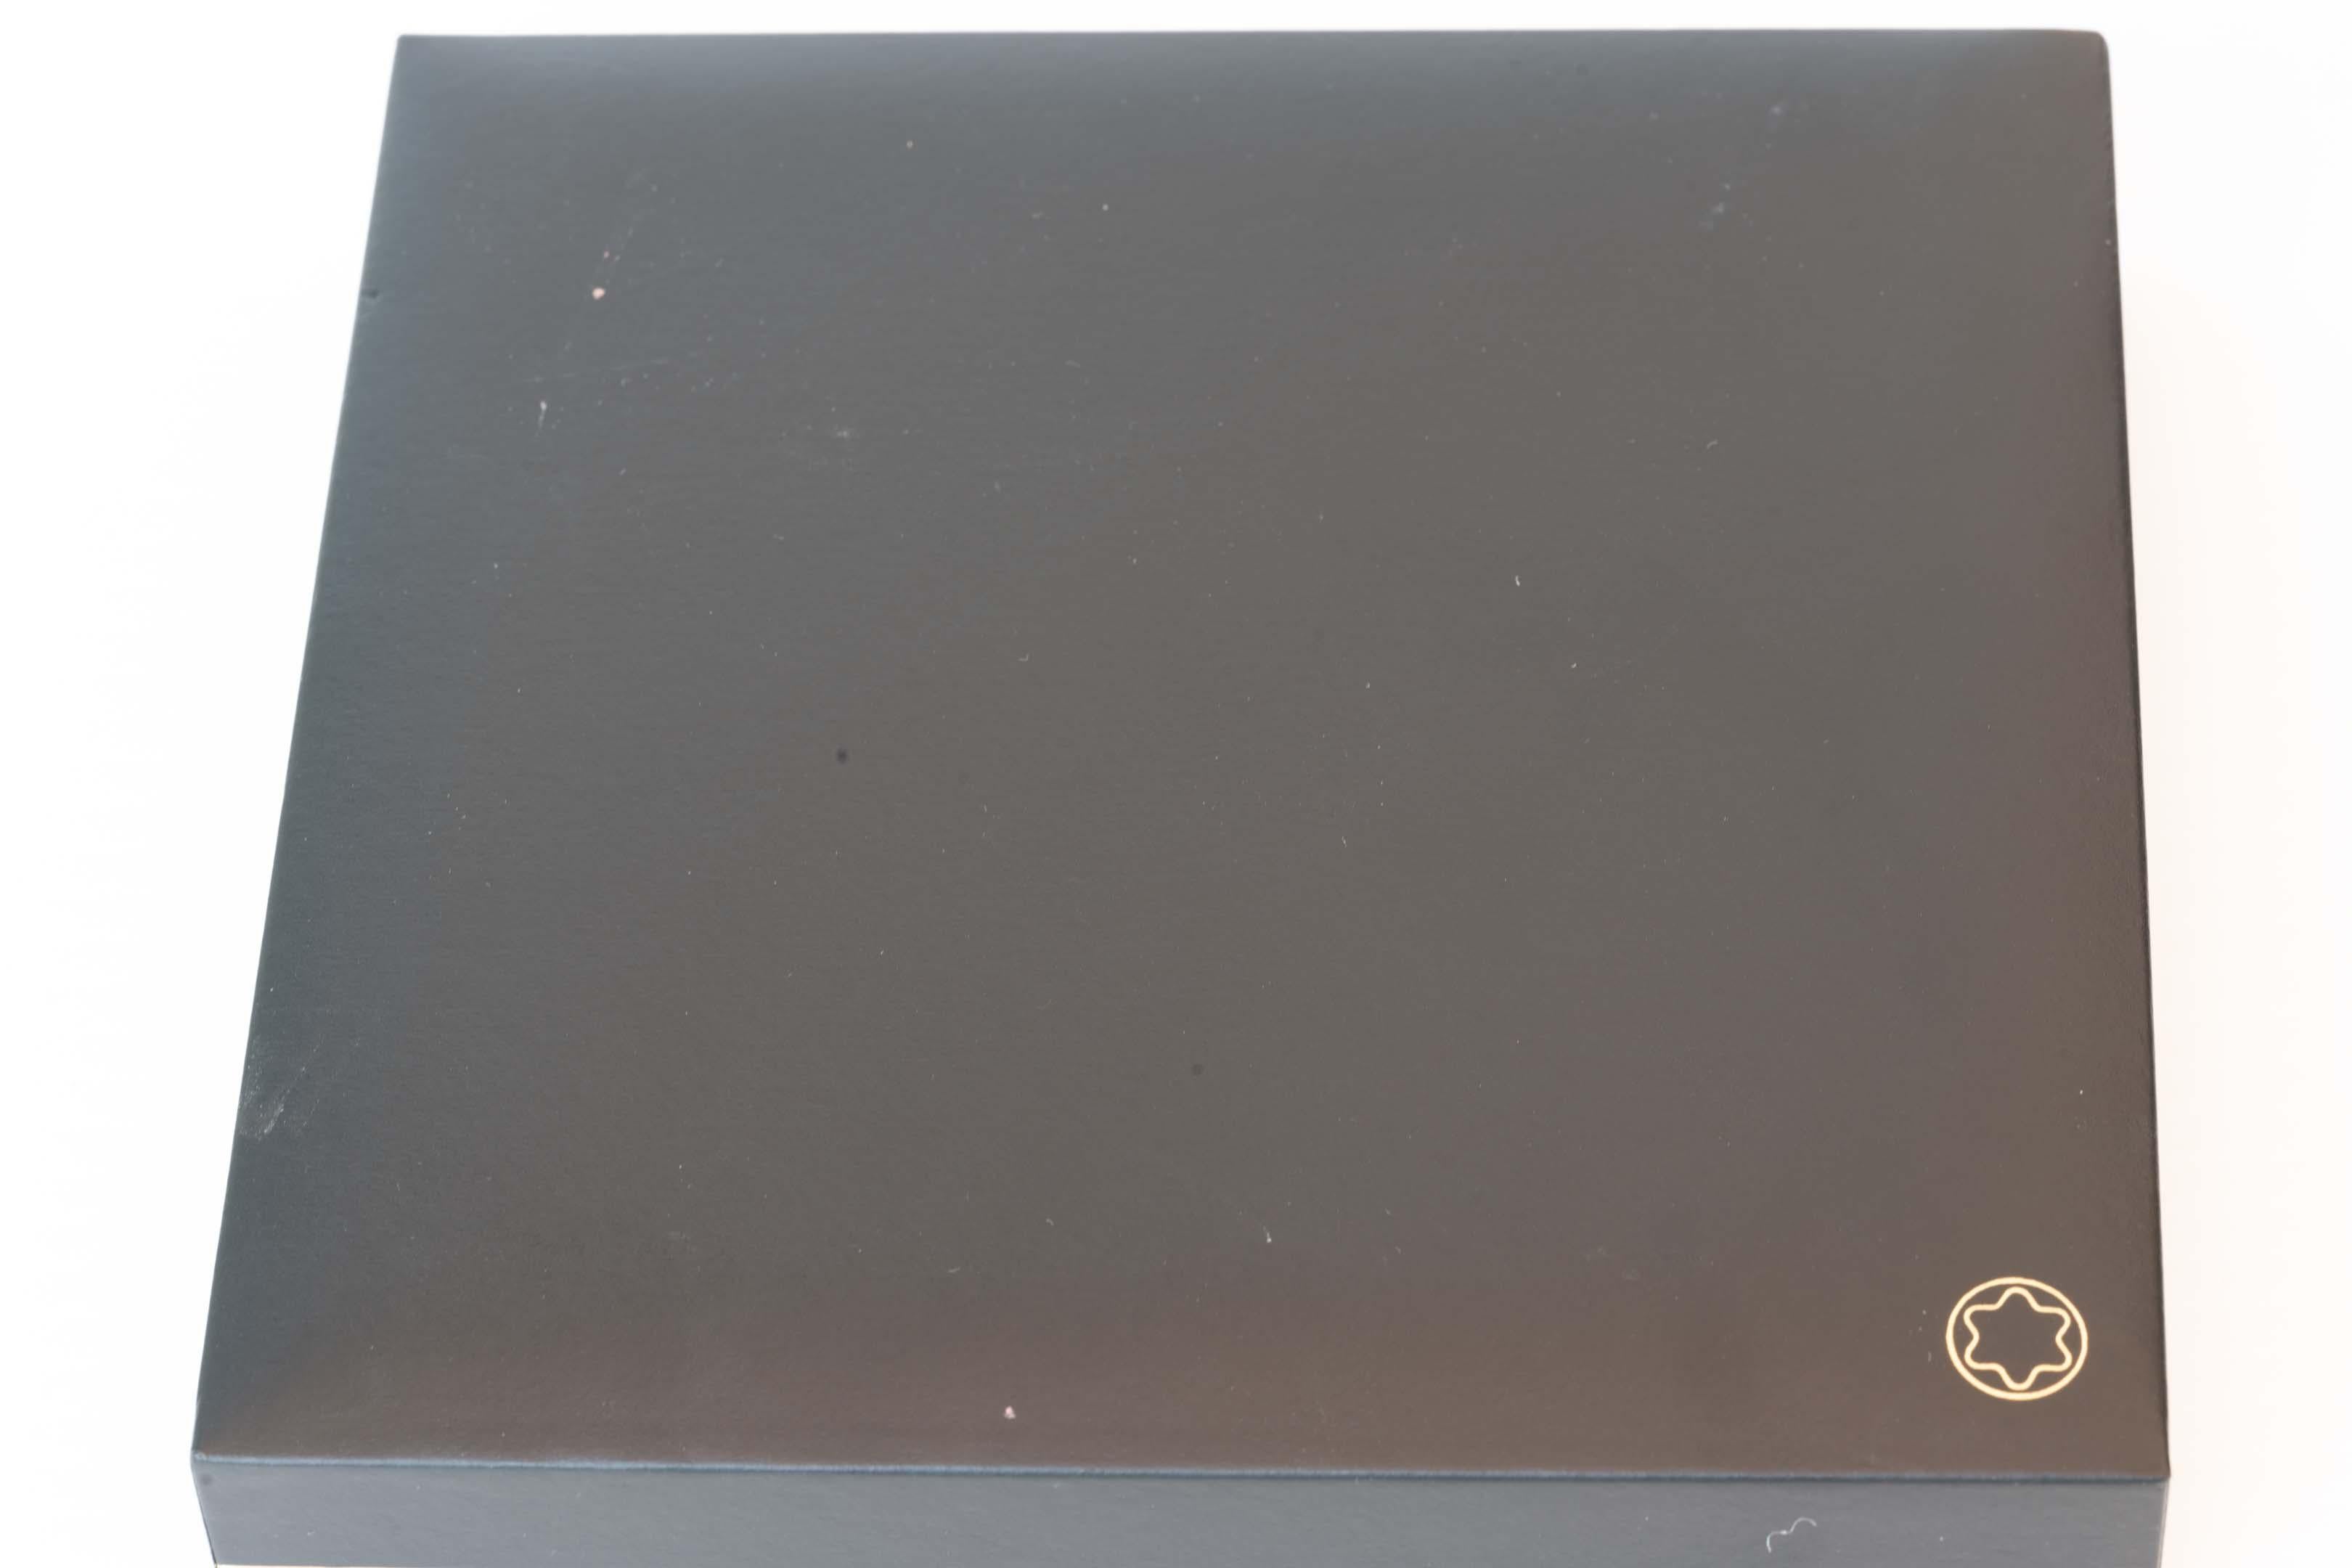 Stylo à bille Montblanc Meisterstuck solitaire en céramique laquée marron, marqué ref GZ1015002 Made in France, Montblanc Meisterstuck. Mesure 13,7 cm de long, en métal doré et céramique. Livré avec 5 recharges de stylo à bille Montblanc non